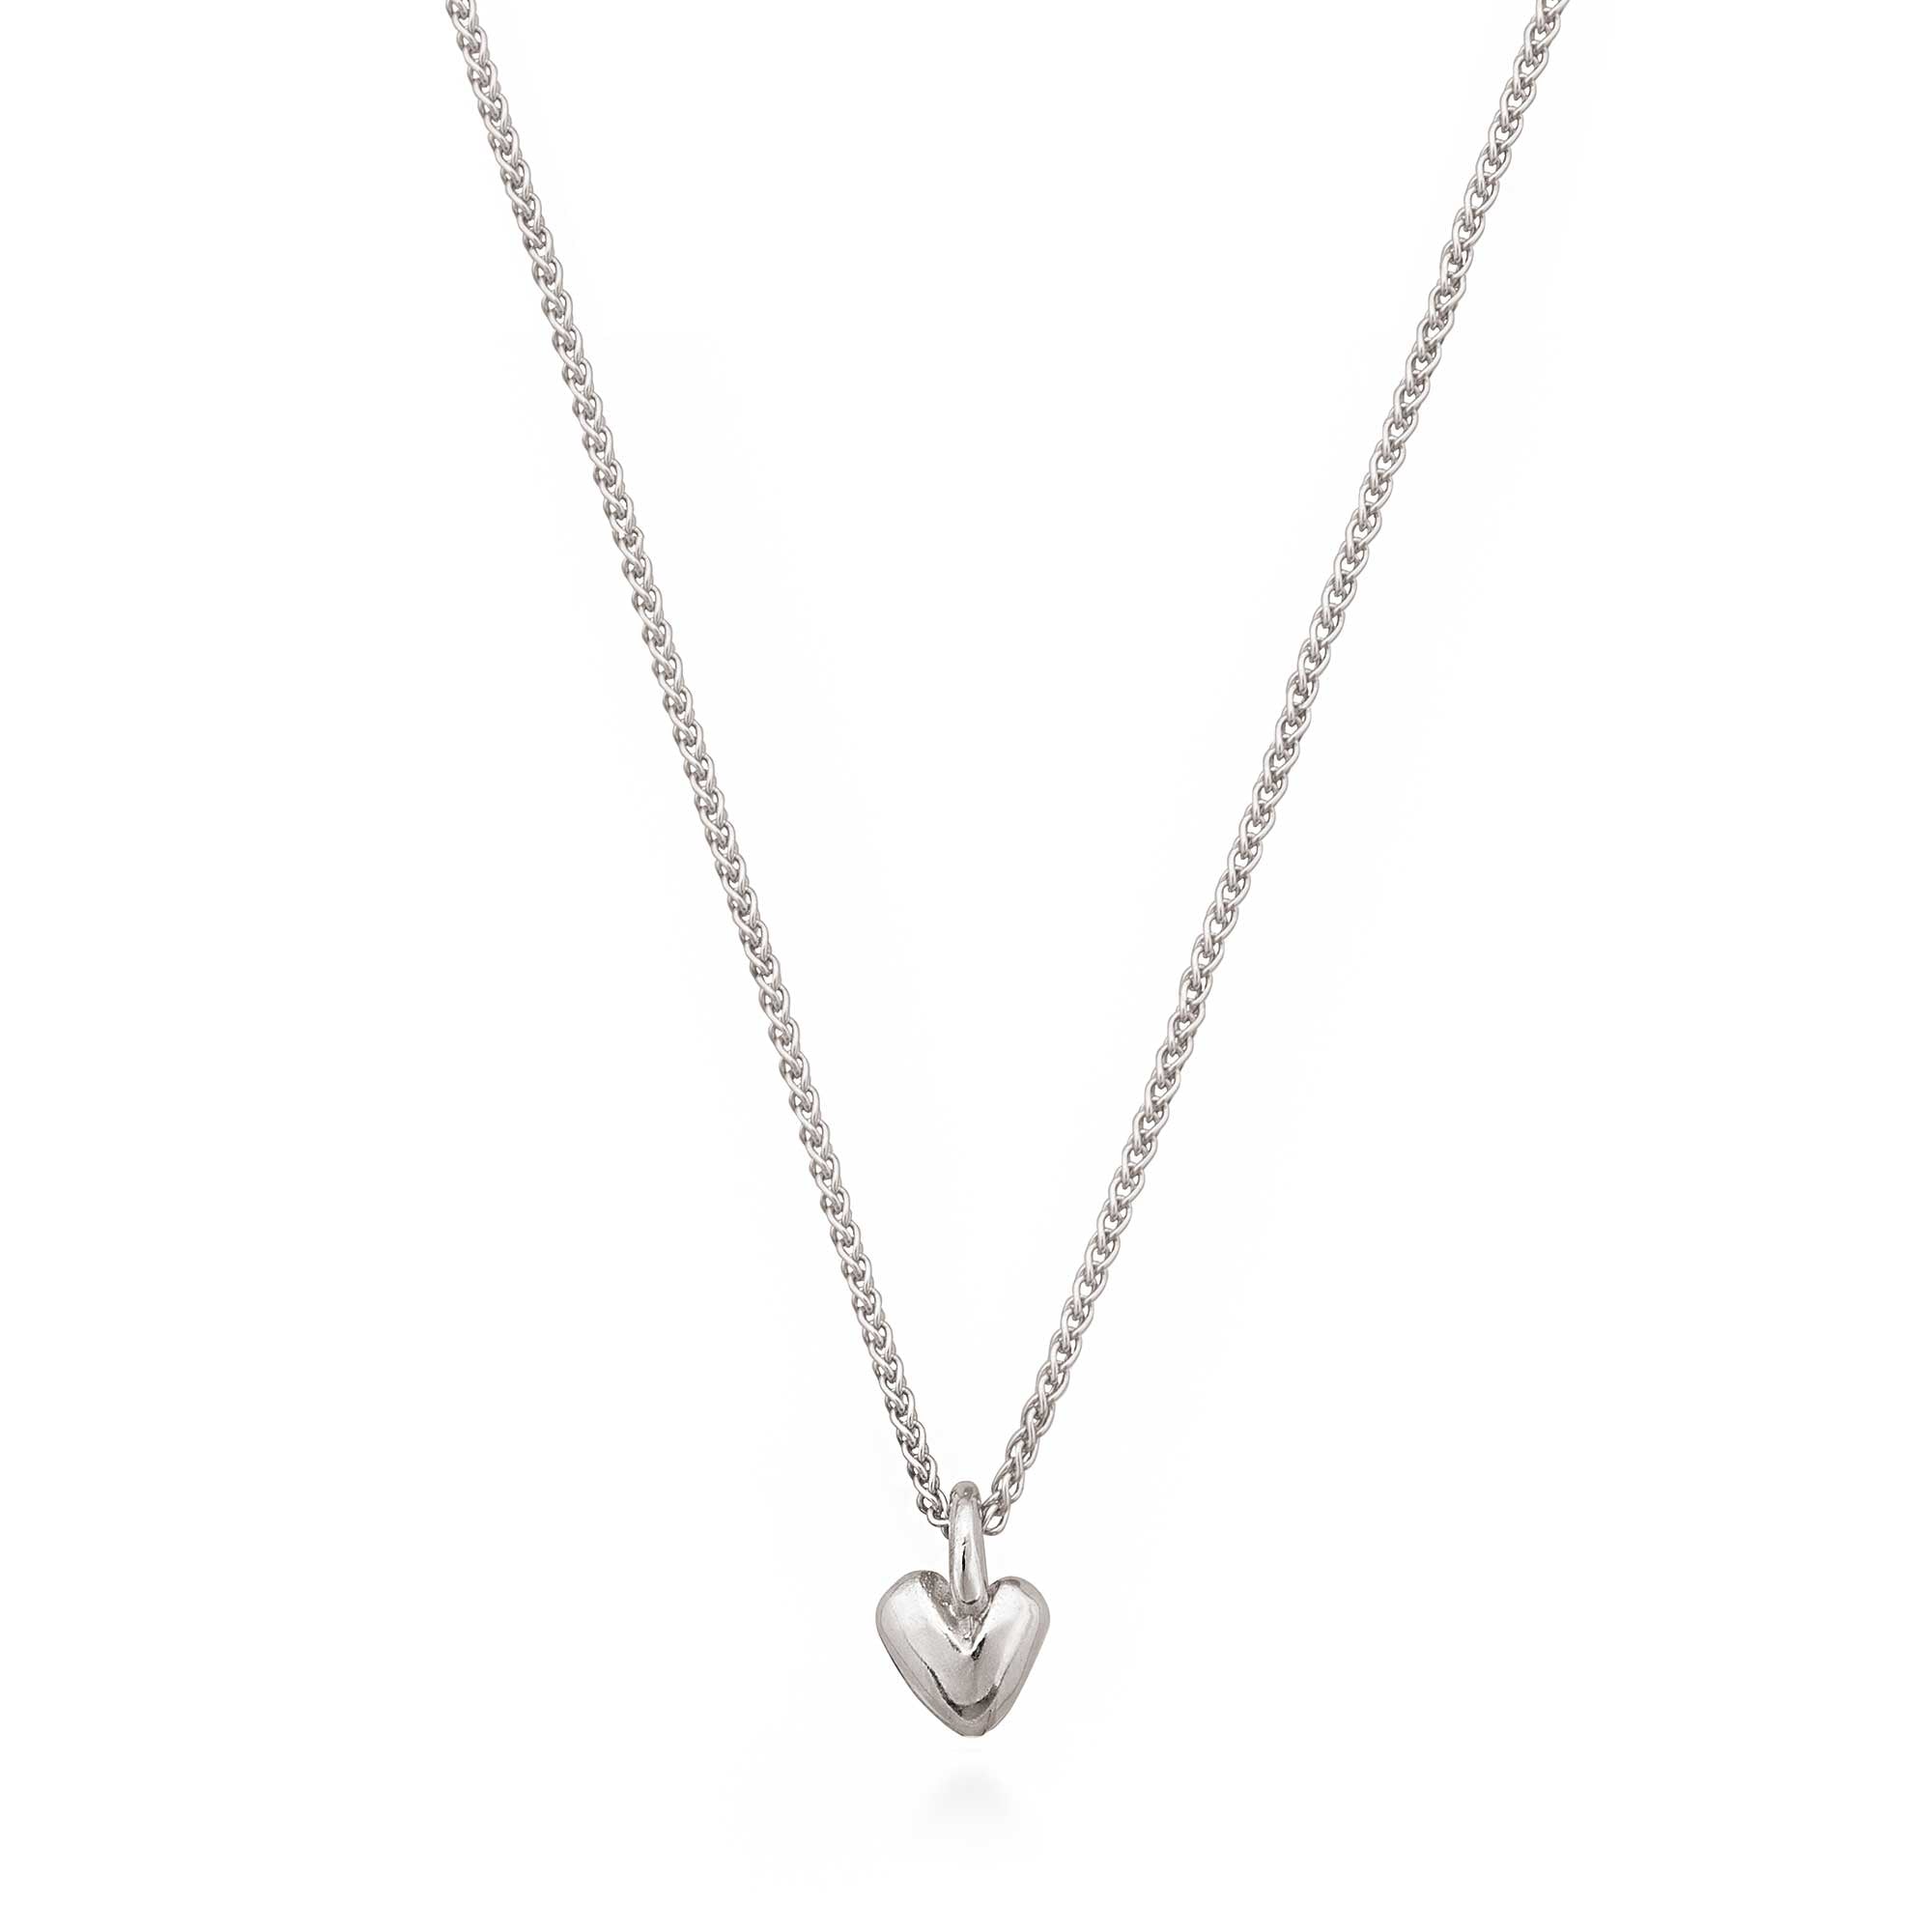 Recycled silver heart pendant Scarlett Jewellery UK